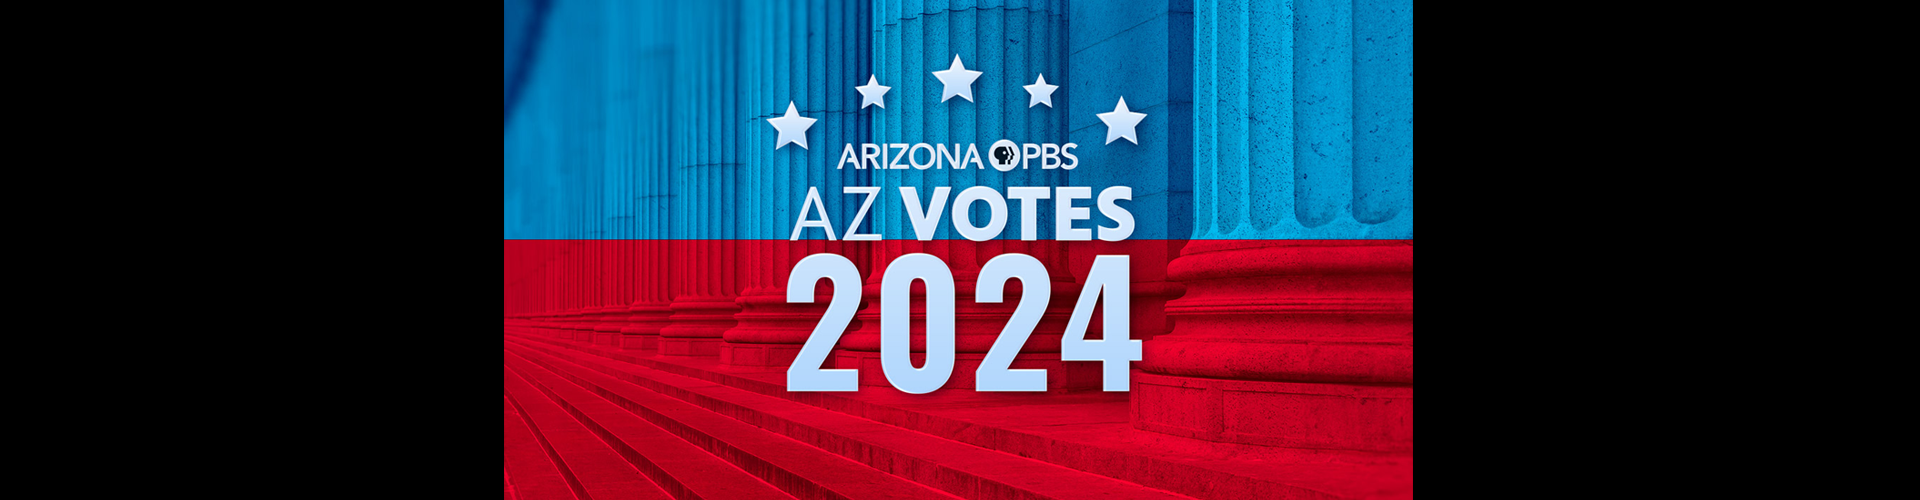 AZ Votes 2024